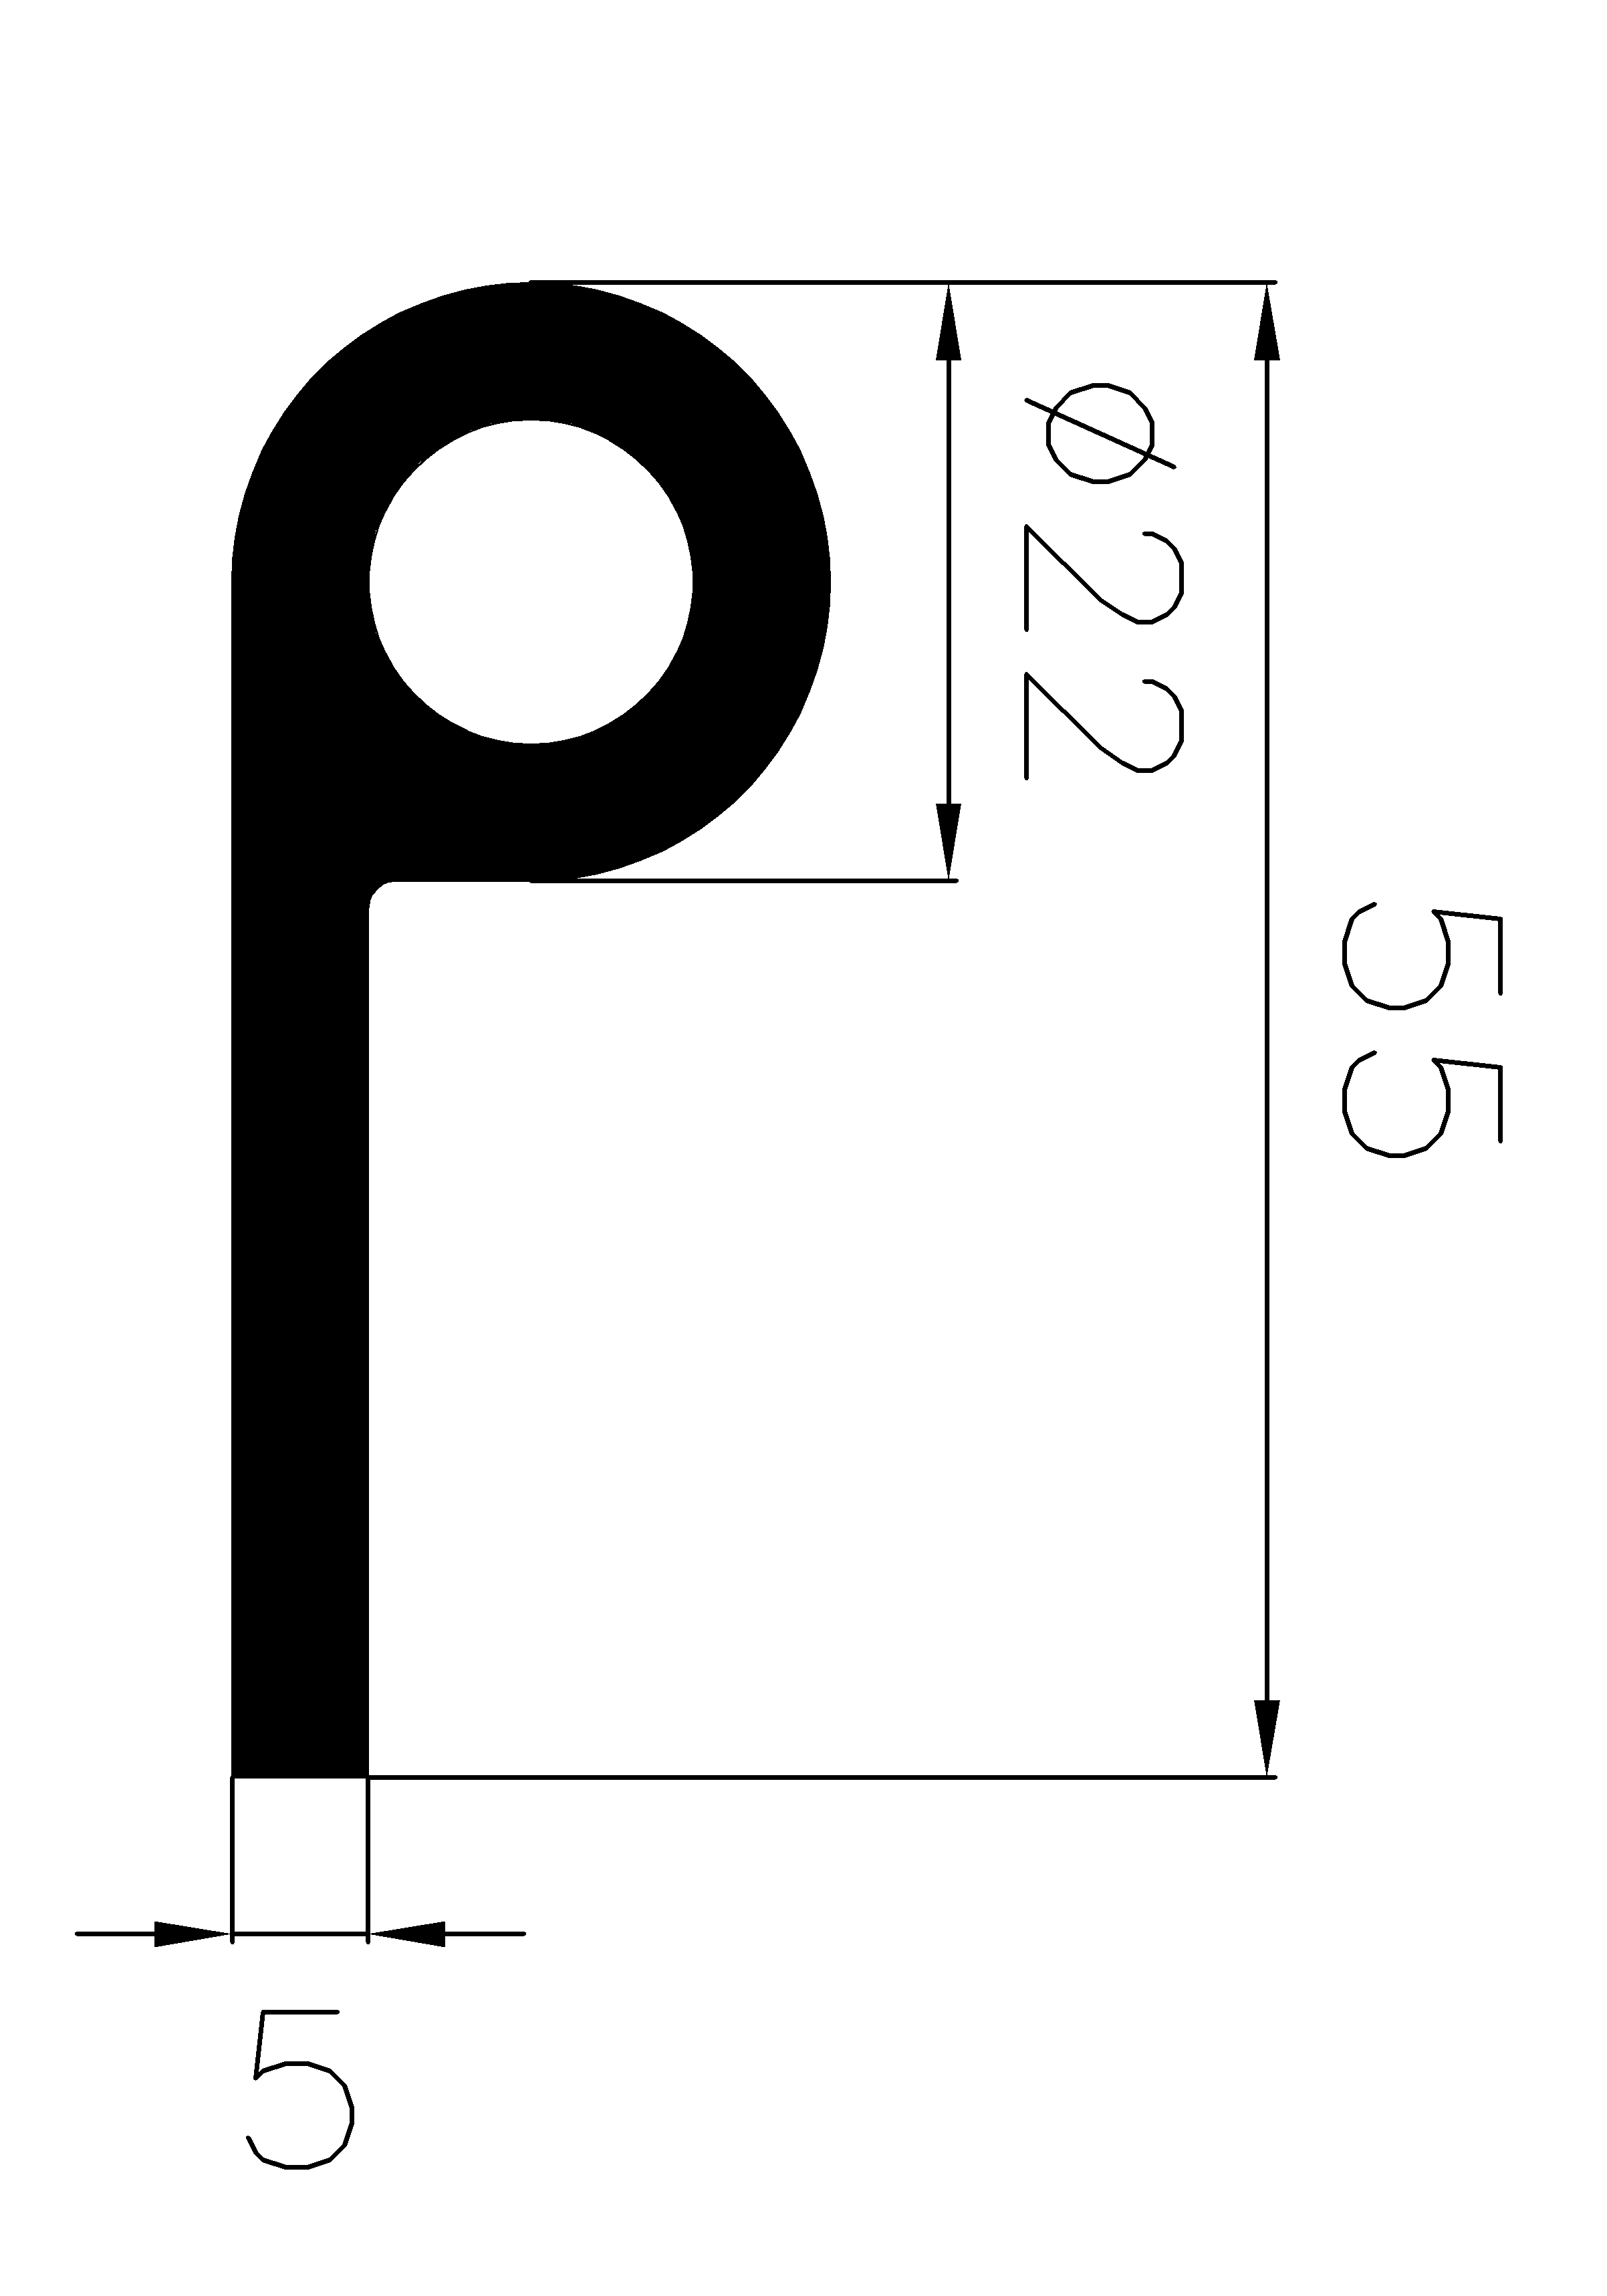 1900360KG - EPDM gumiprofilok - Lobogó vagy 'P' alakú profilok